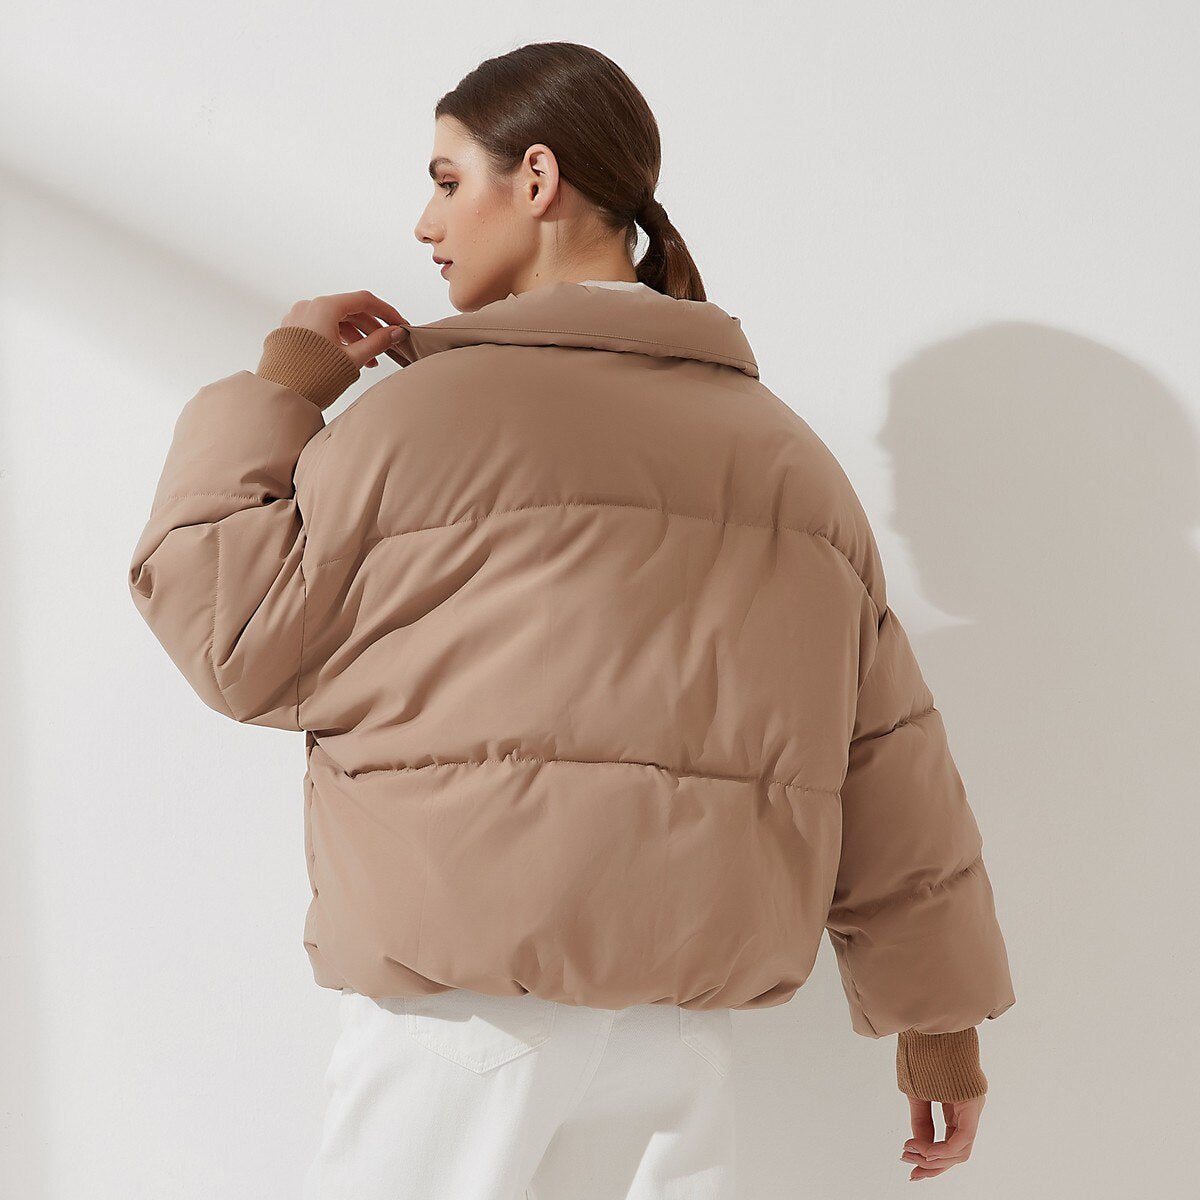 Women Thick Warm Cotton Jackets - DromedarShop.com Online Boutique